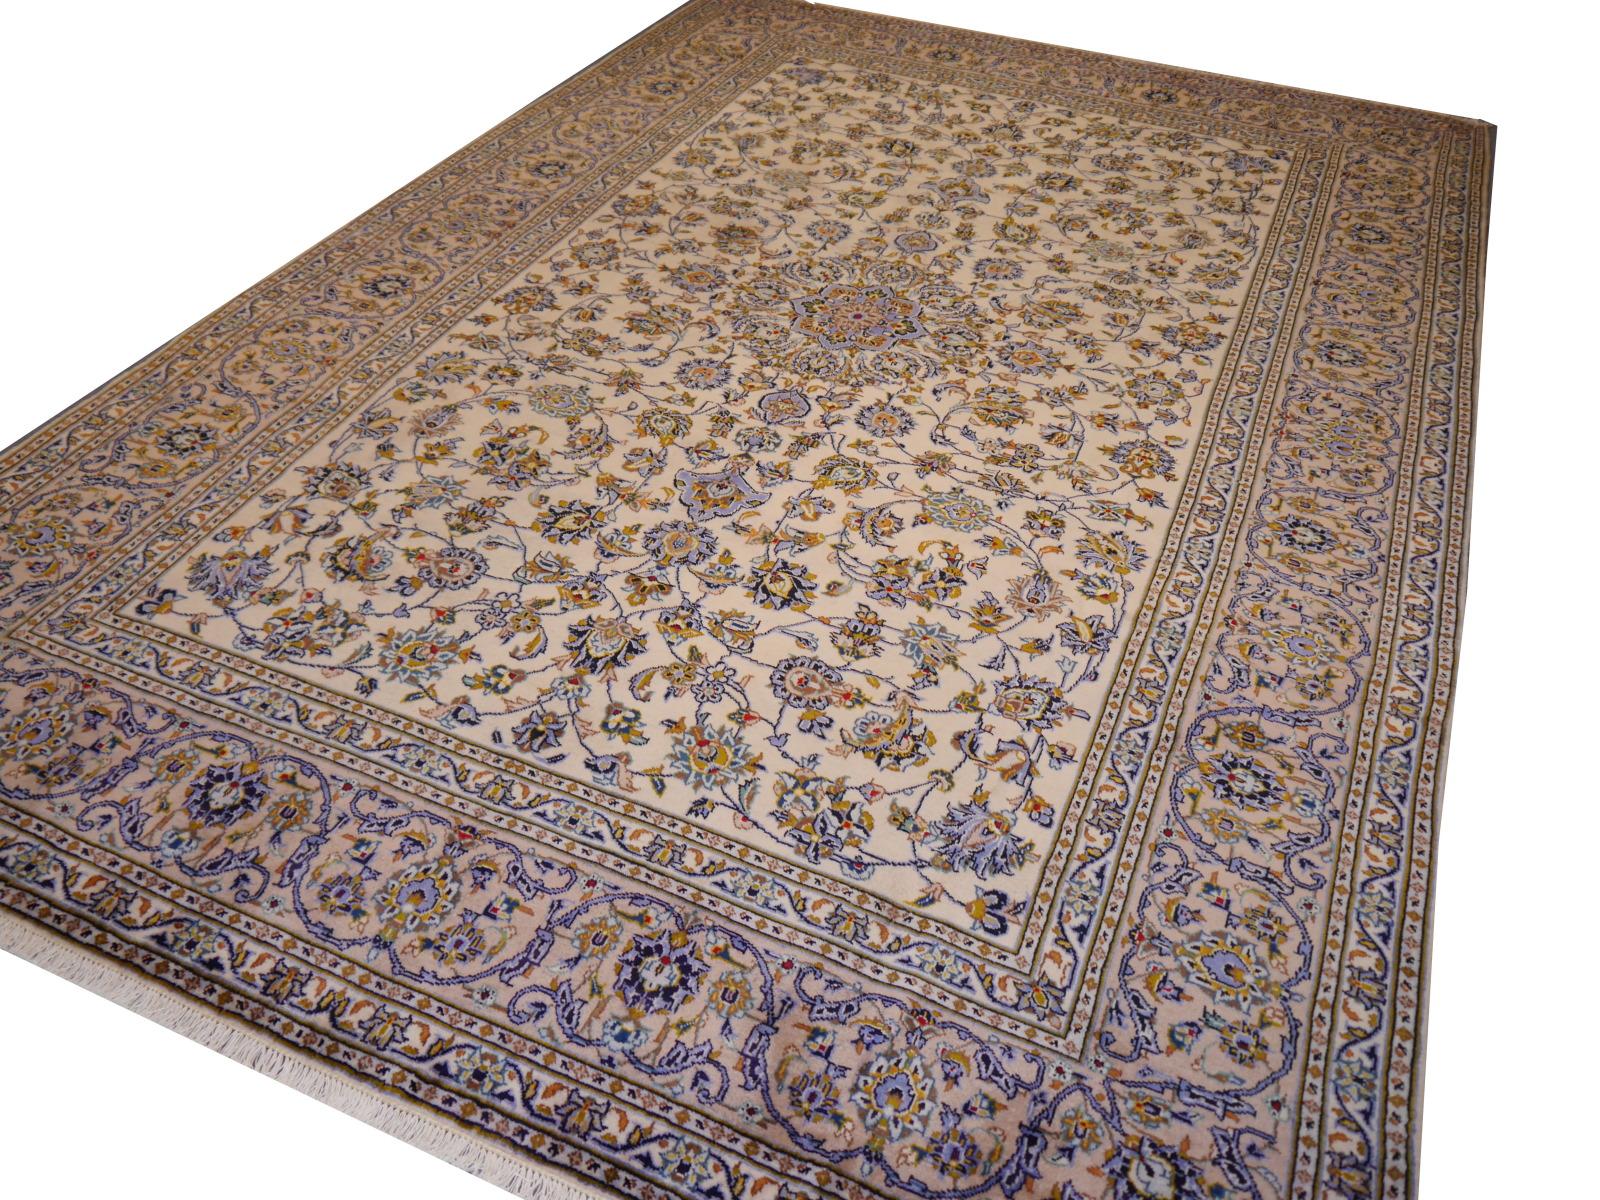 Wunderschöner Orientteppich im Vintage-Stil in Beige und Blau.

Orientteppiche werden aus feiner, handgesponnener Wolle hergestellt, 
Dieses wunderbare und atemberaubende Exemplar hat ein helles Aussehen. Er wird mit Wolle, einem nachhaltigen